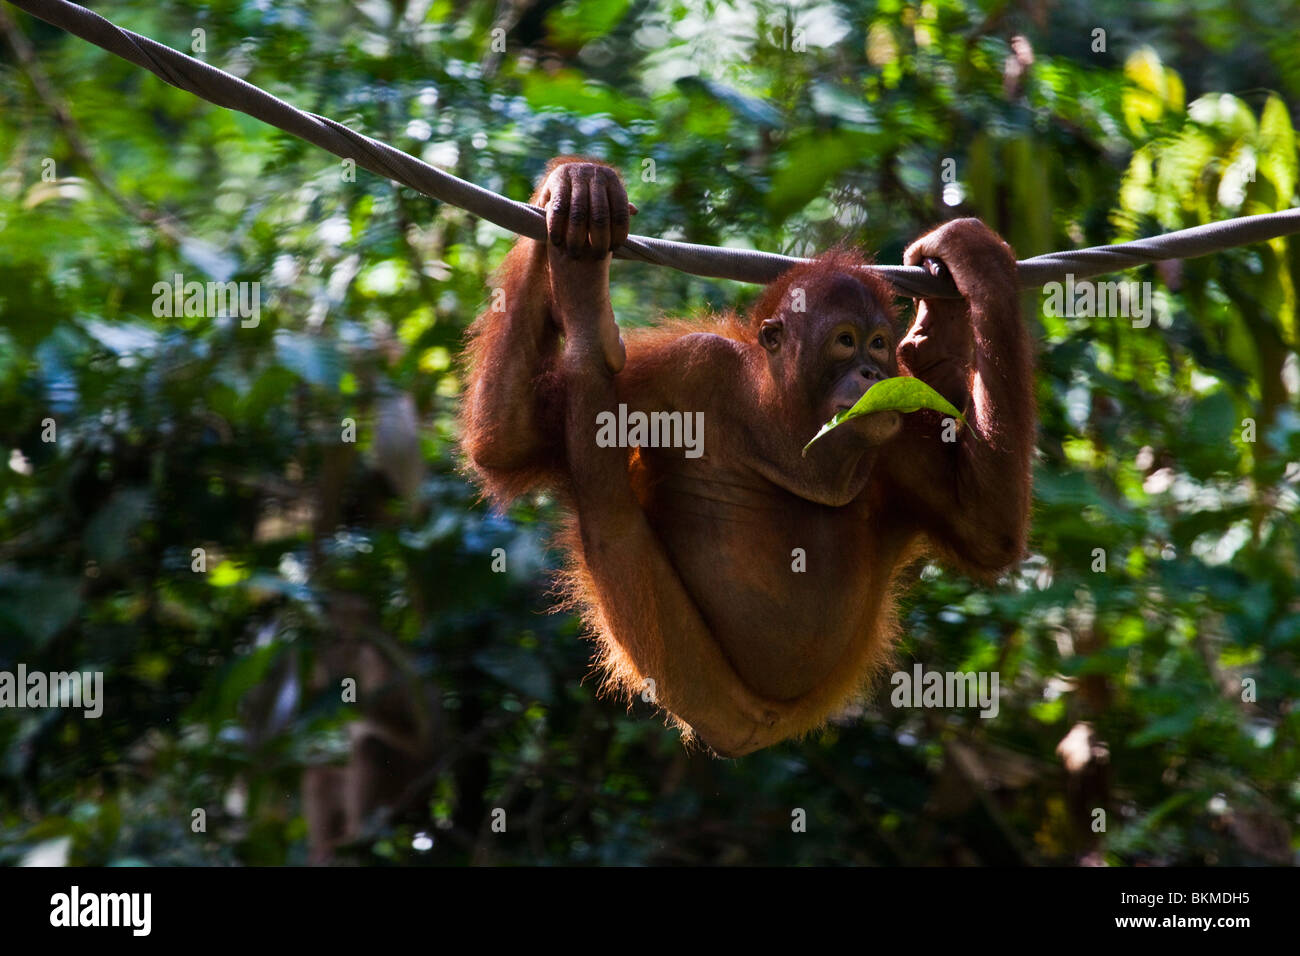 Orangutan (Pongo pygmaeus) at the Sepilok Orangutan Rehabilitation Centre. Sandakan, Sabah, Borneo, Malaysia. Stock Photo